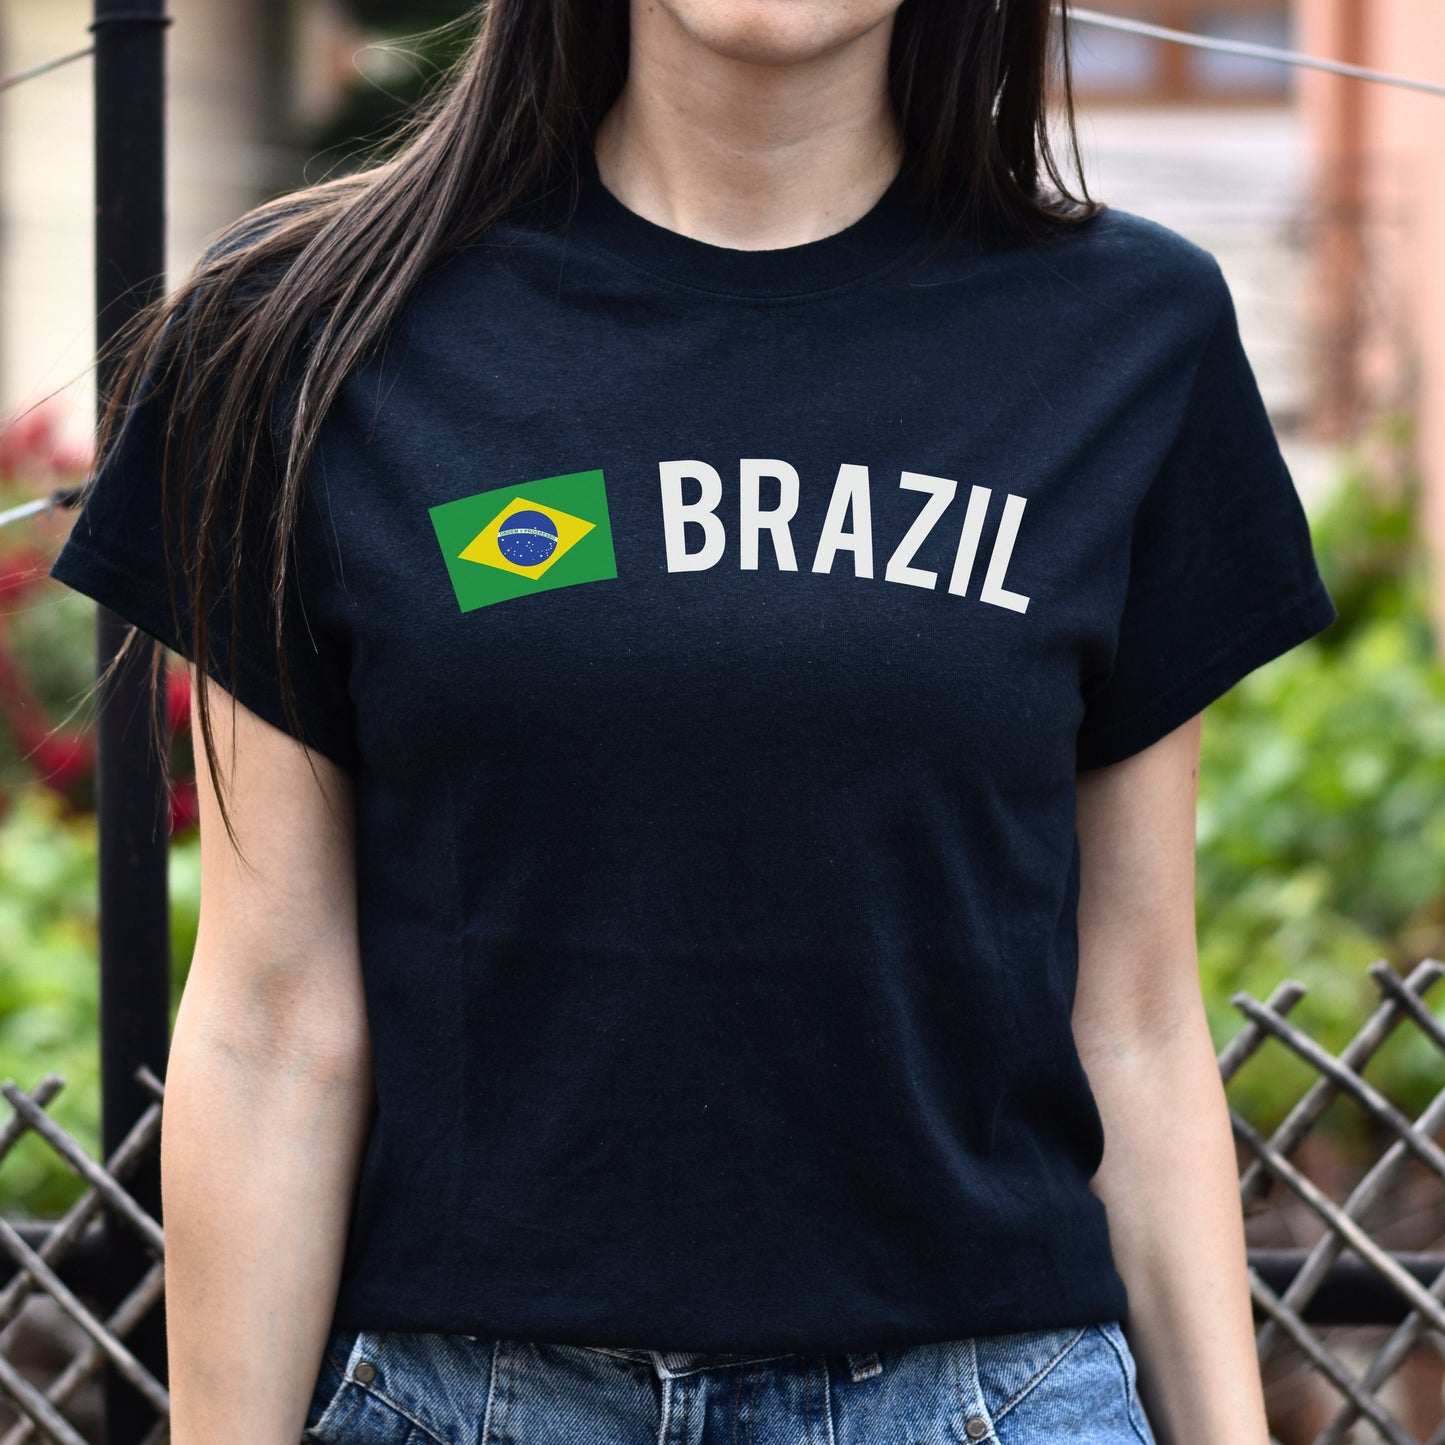 Brazil Unisex T-shirt gift Brazilian flag tee Brasilia White Black Dark Heather-Black-Family-Gift-Planet